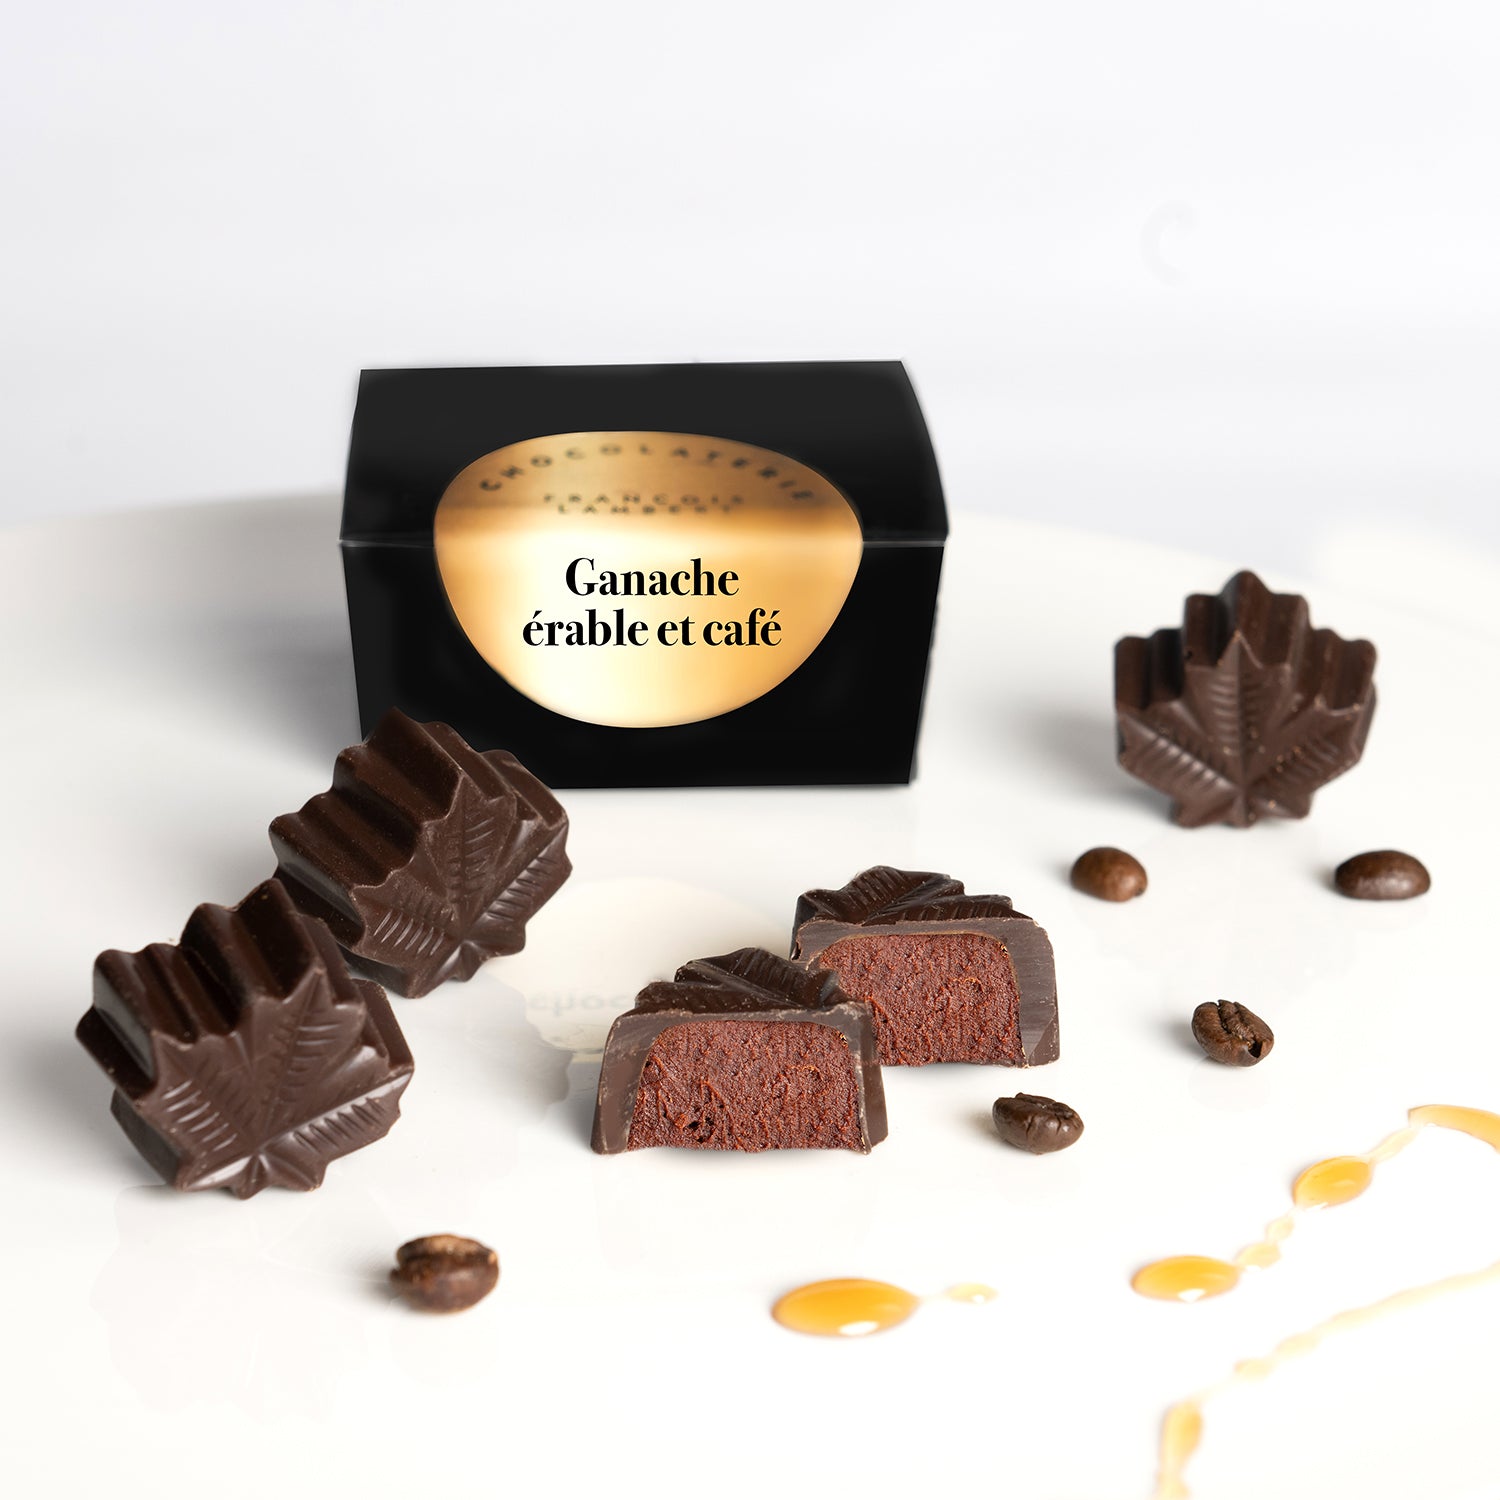 Ganache.chocolat artisanal